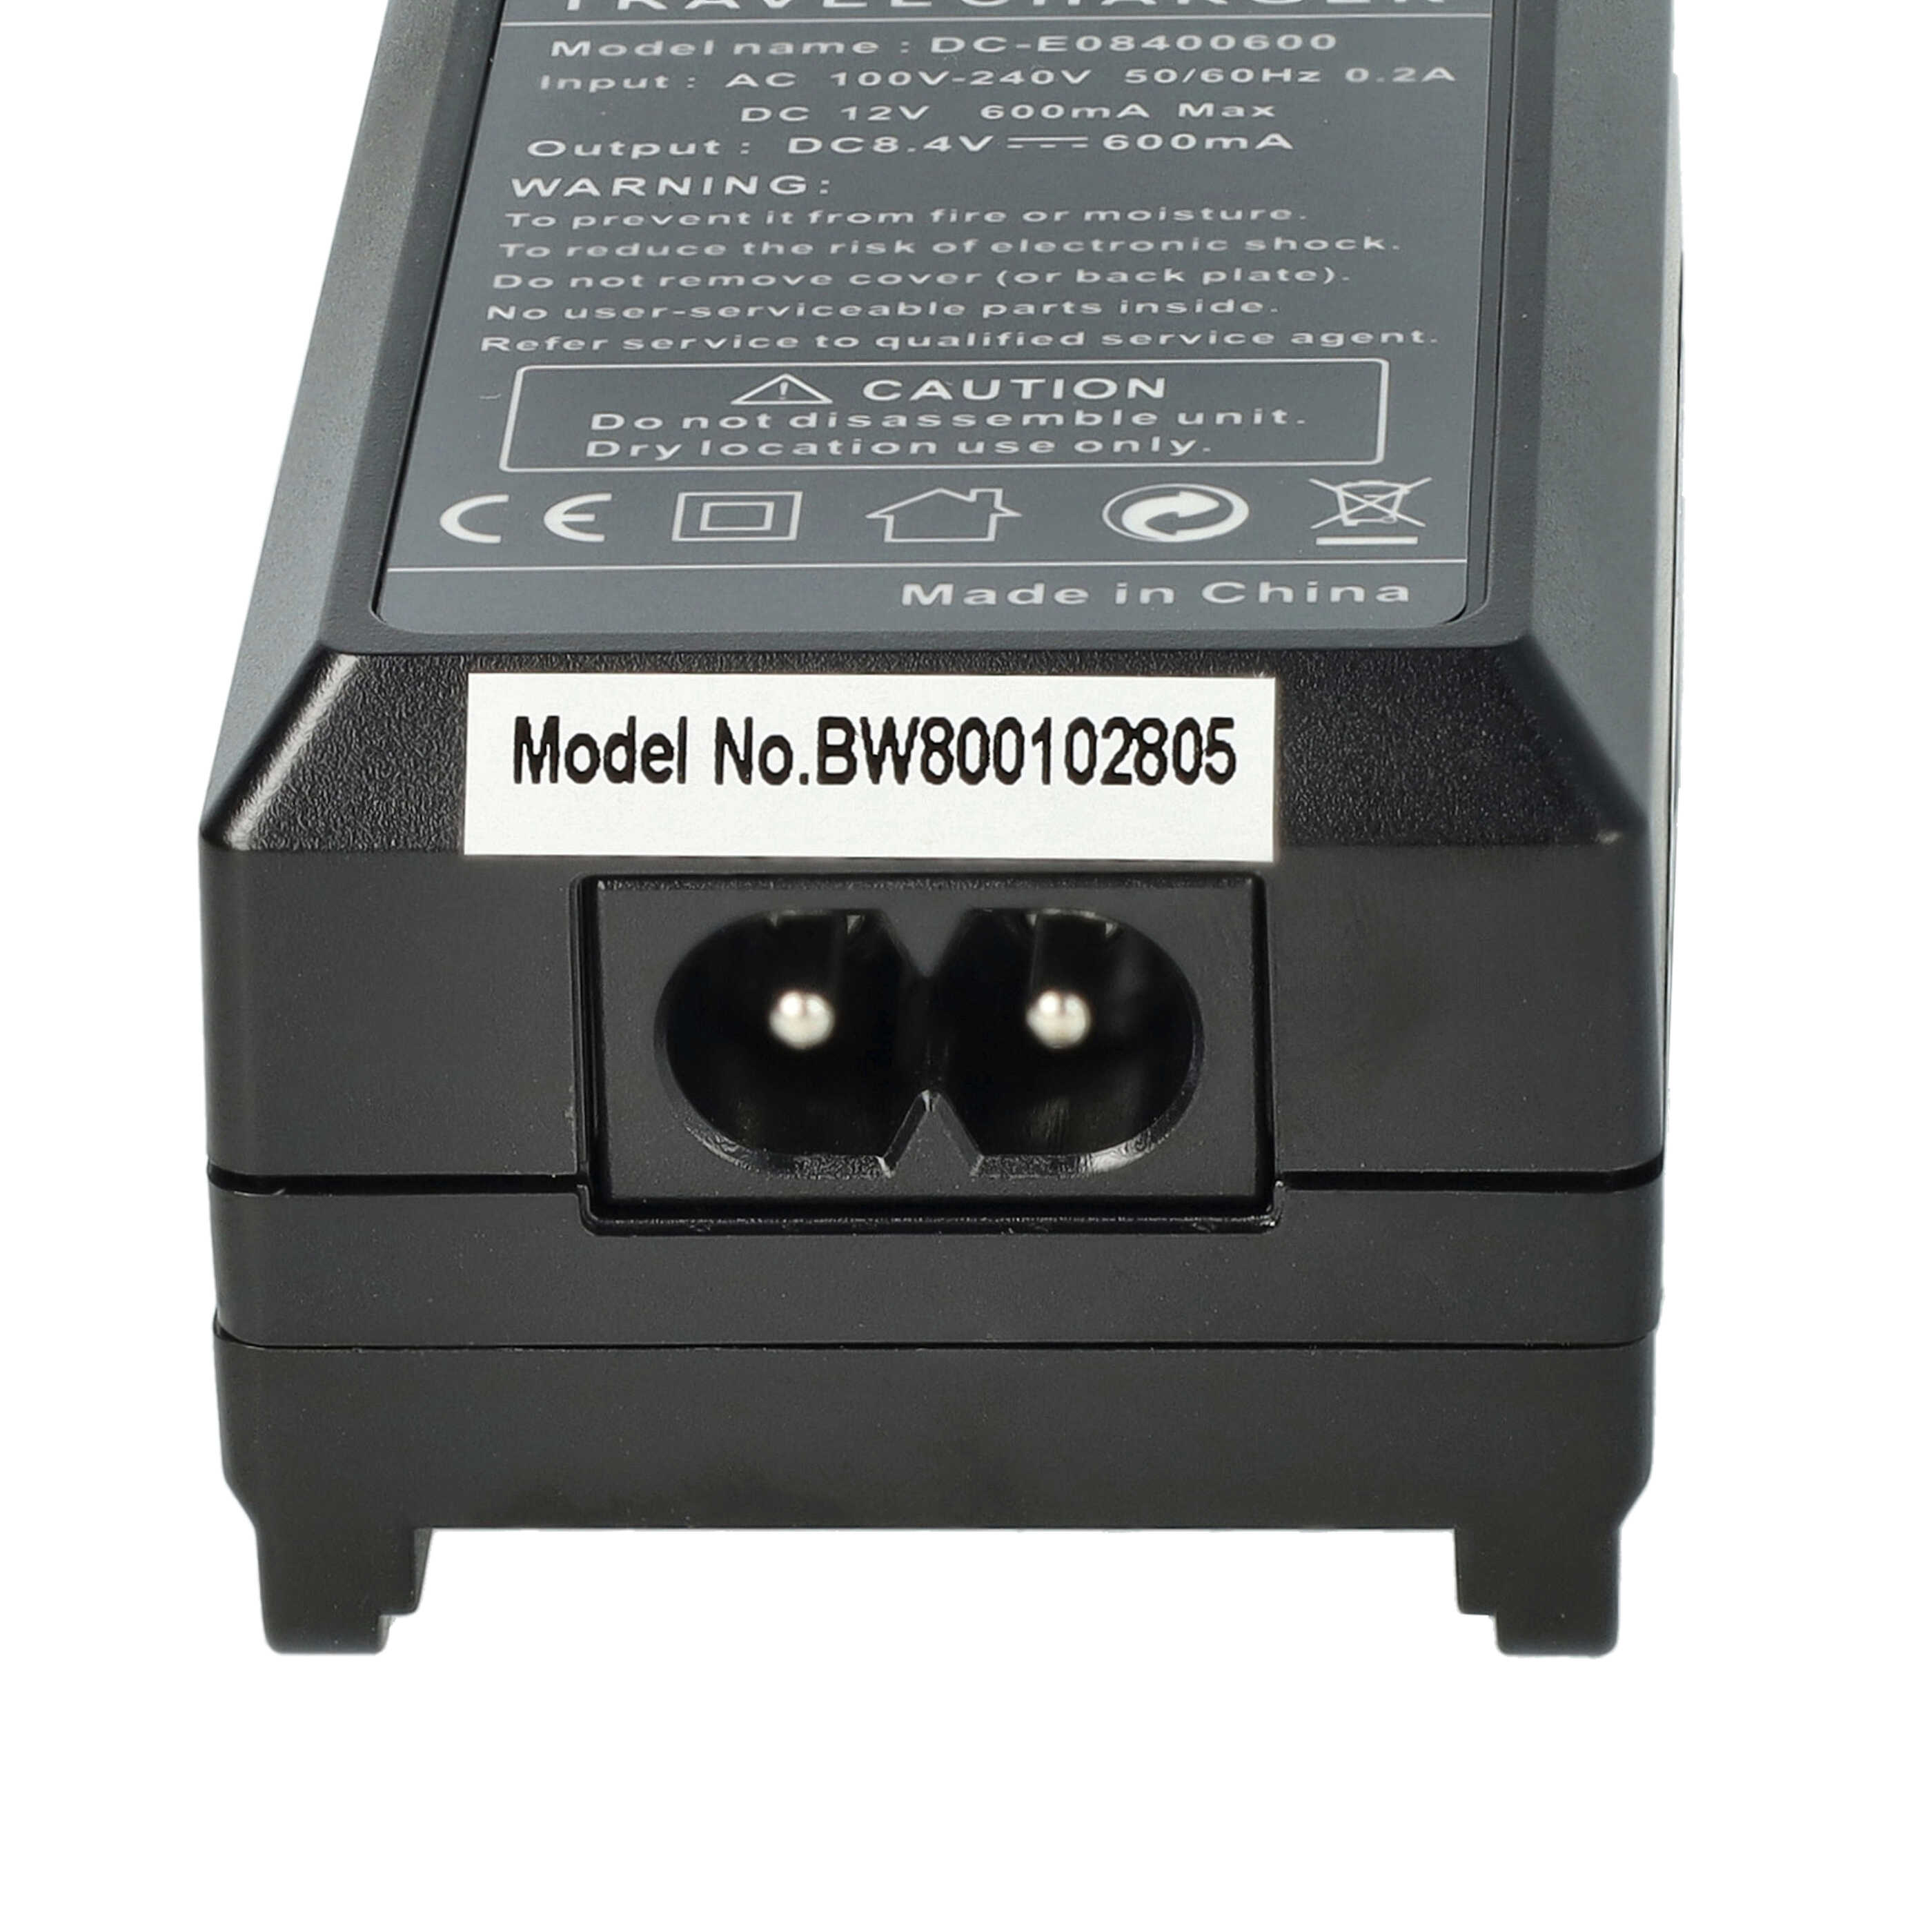 Ładowarka do aparatu HS900 i innych - ładowarka akumulatora 0,6 A, 8,4 V